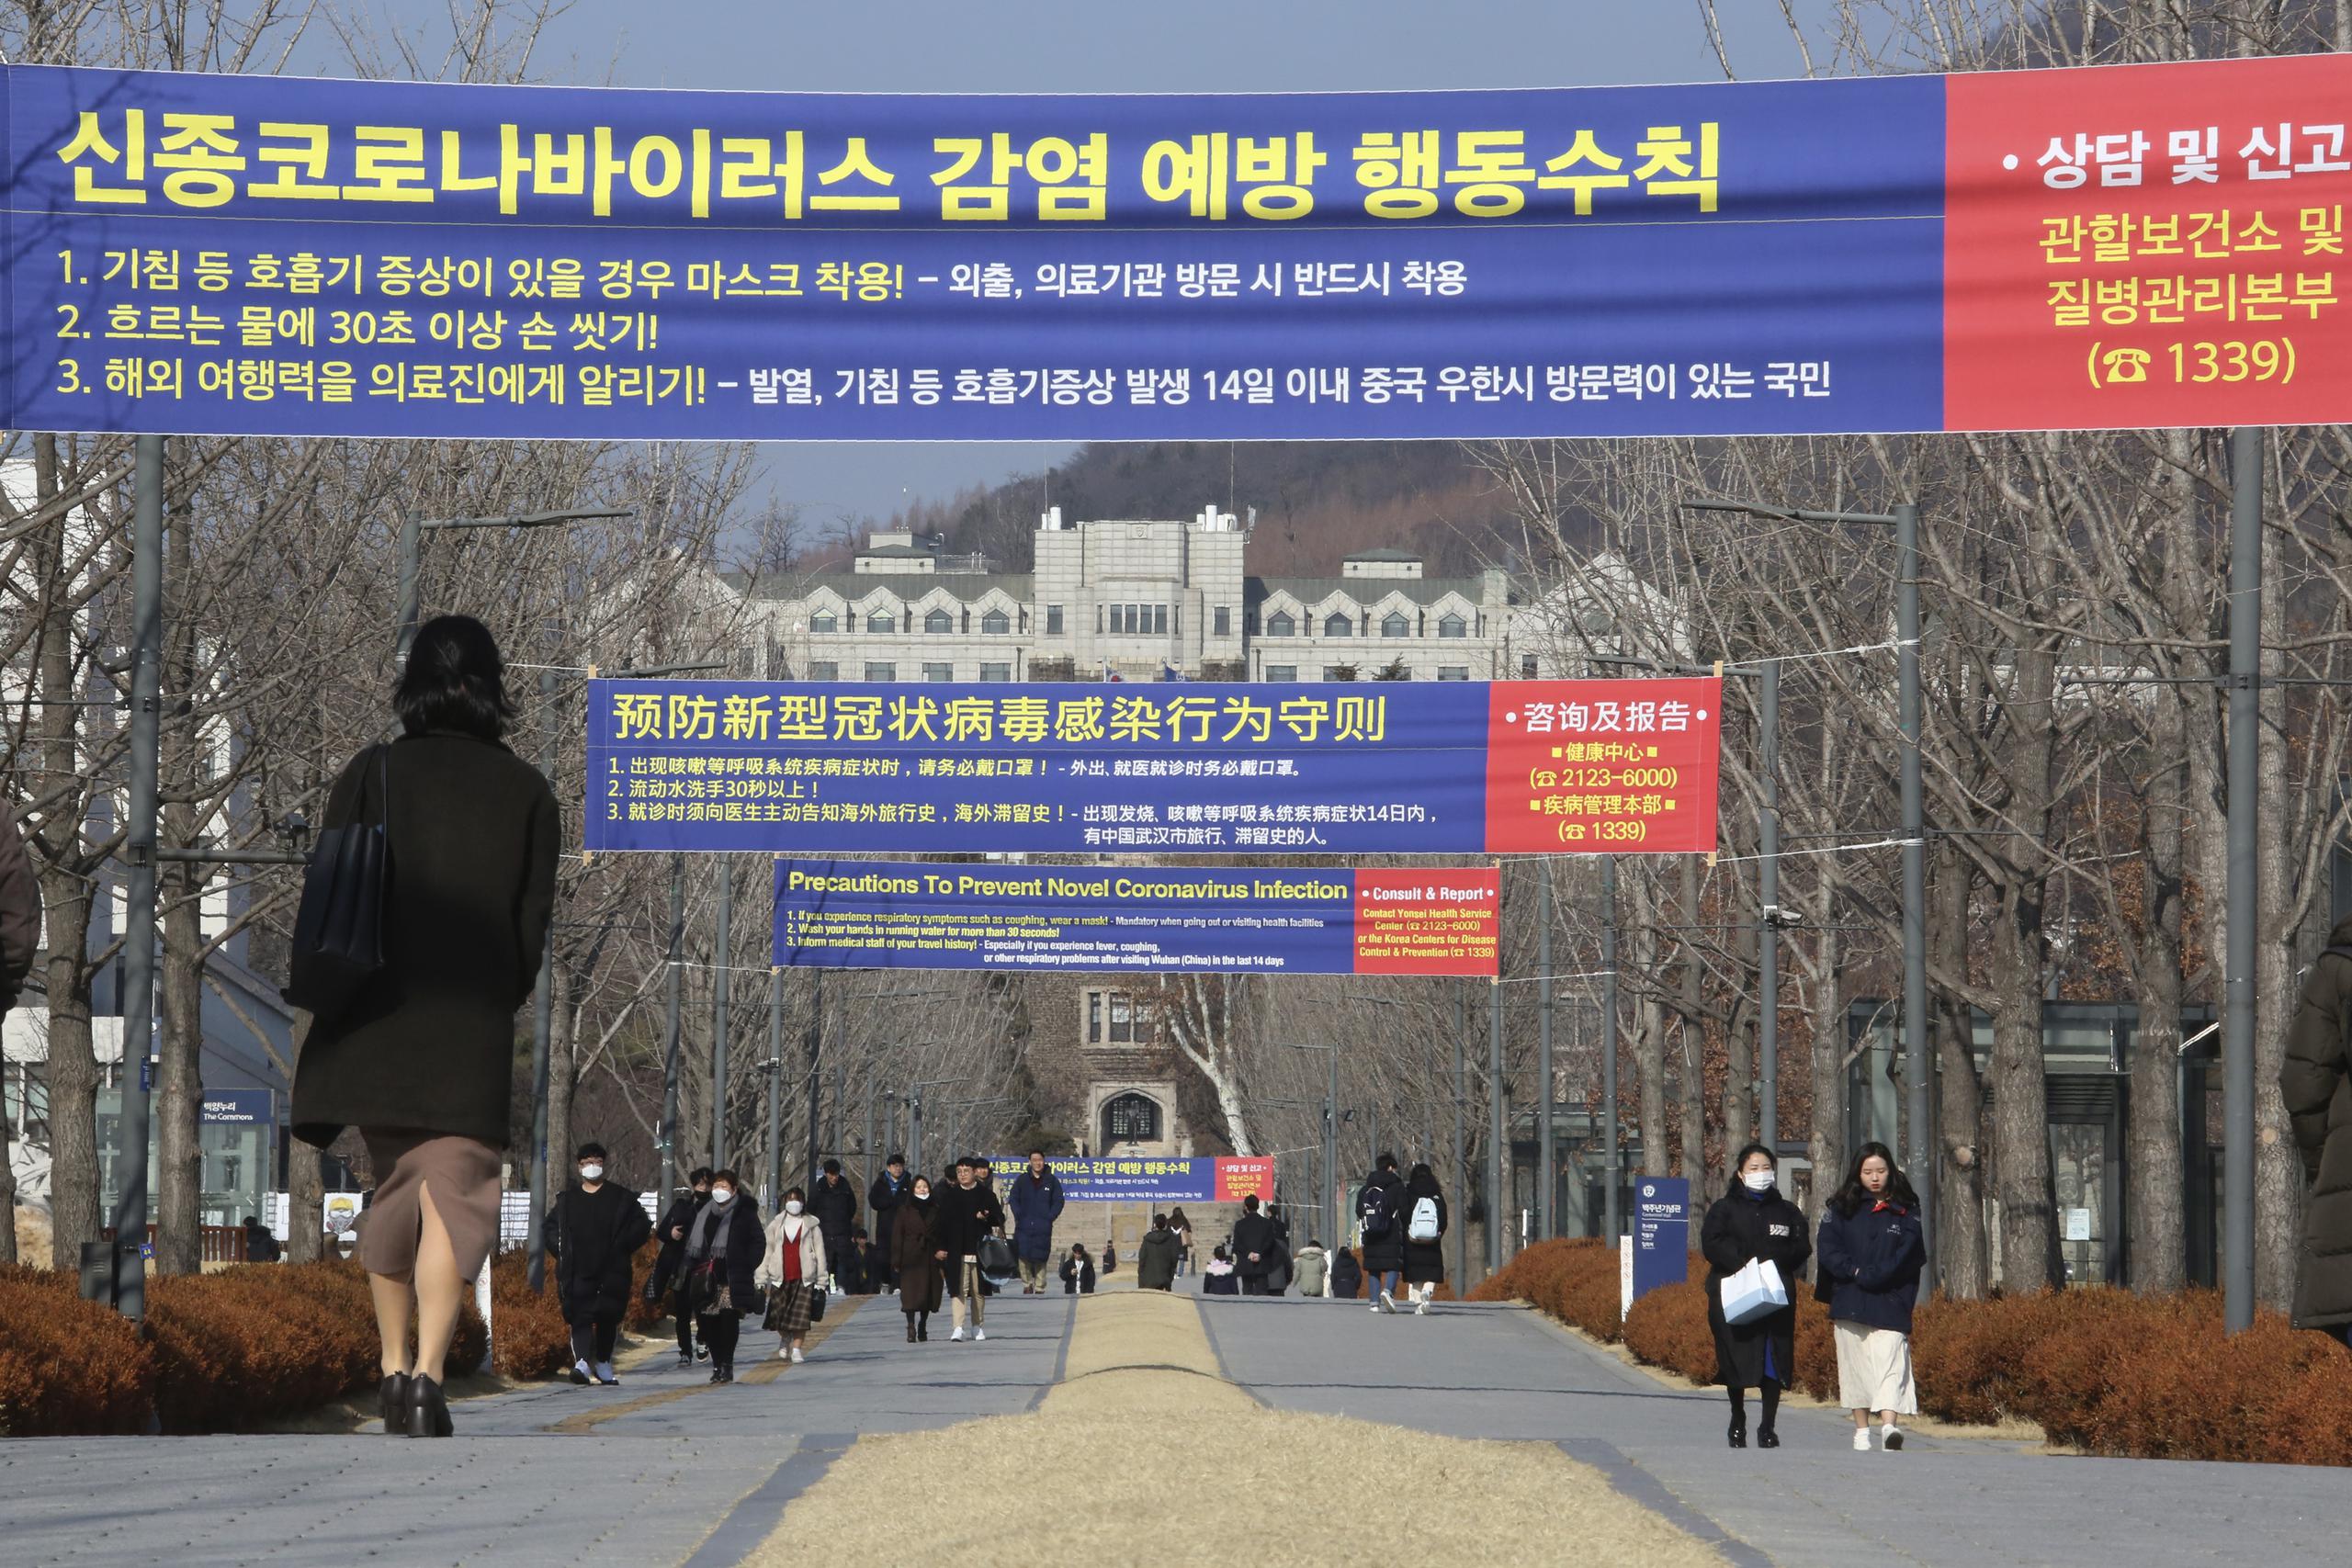 Varias personas caminan por debajo de carteles que informan sobre las precauciones sobre un nuevo coronavirus, en la Universidad Yeonsei de Seúl, Corea del Sur.